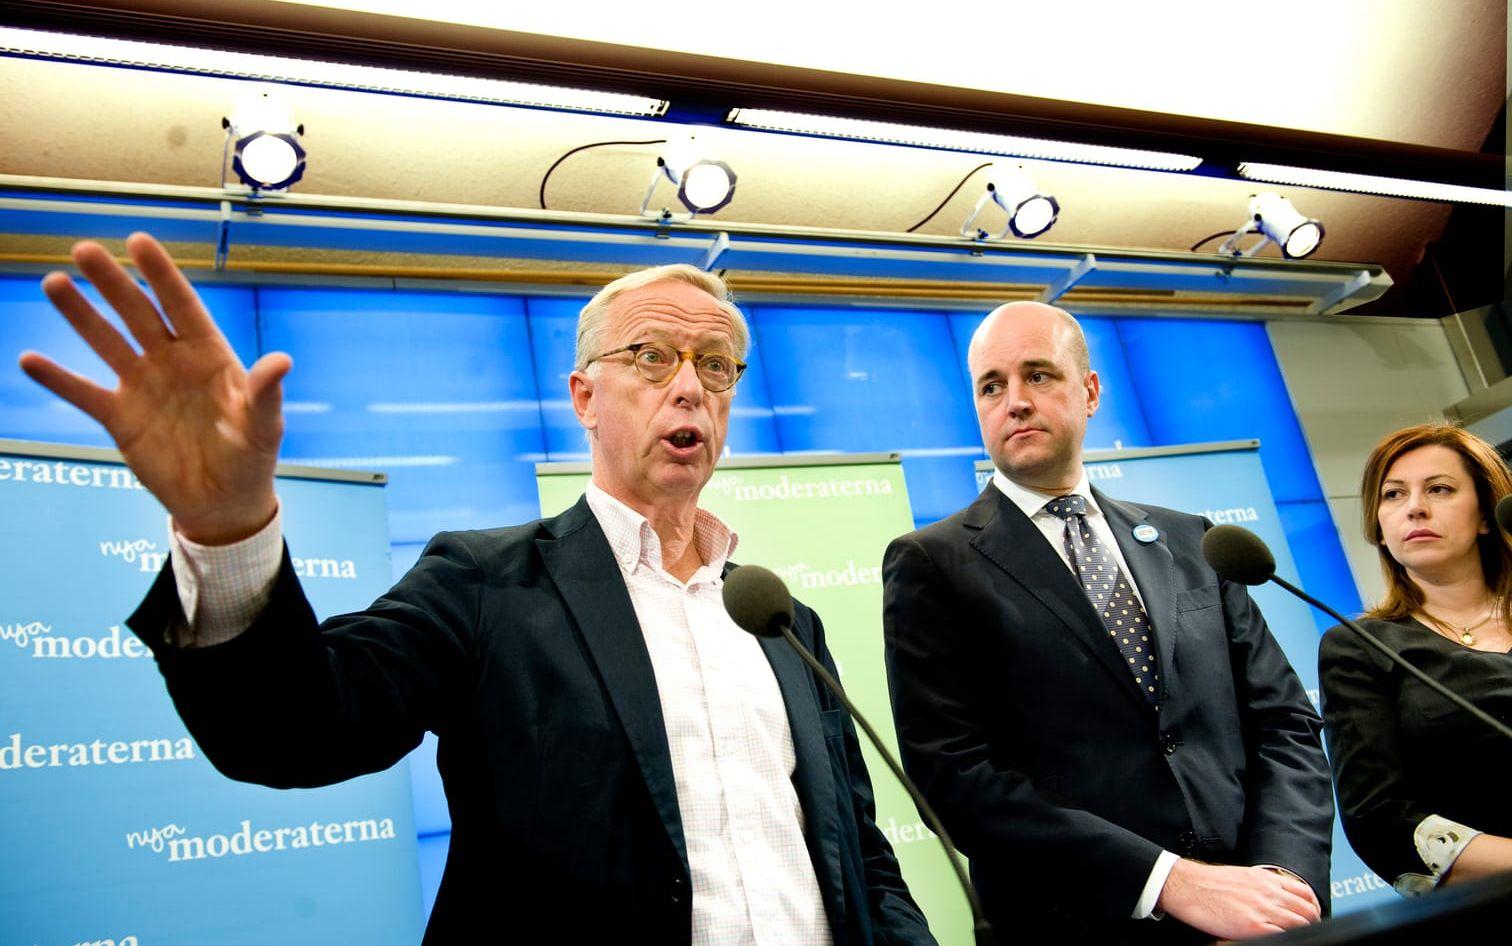 Den före detta riksdagsledamoten Gunnar Hökmark för Moderaterna med dåvarande partiledare Fredrik Reinfeldt och partikollegan Anna Ibrisagic, 2009.